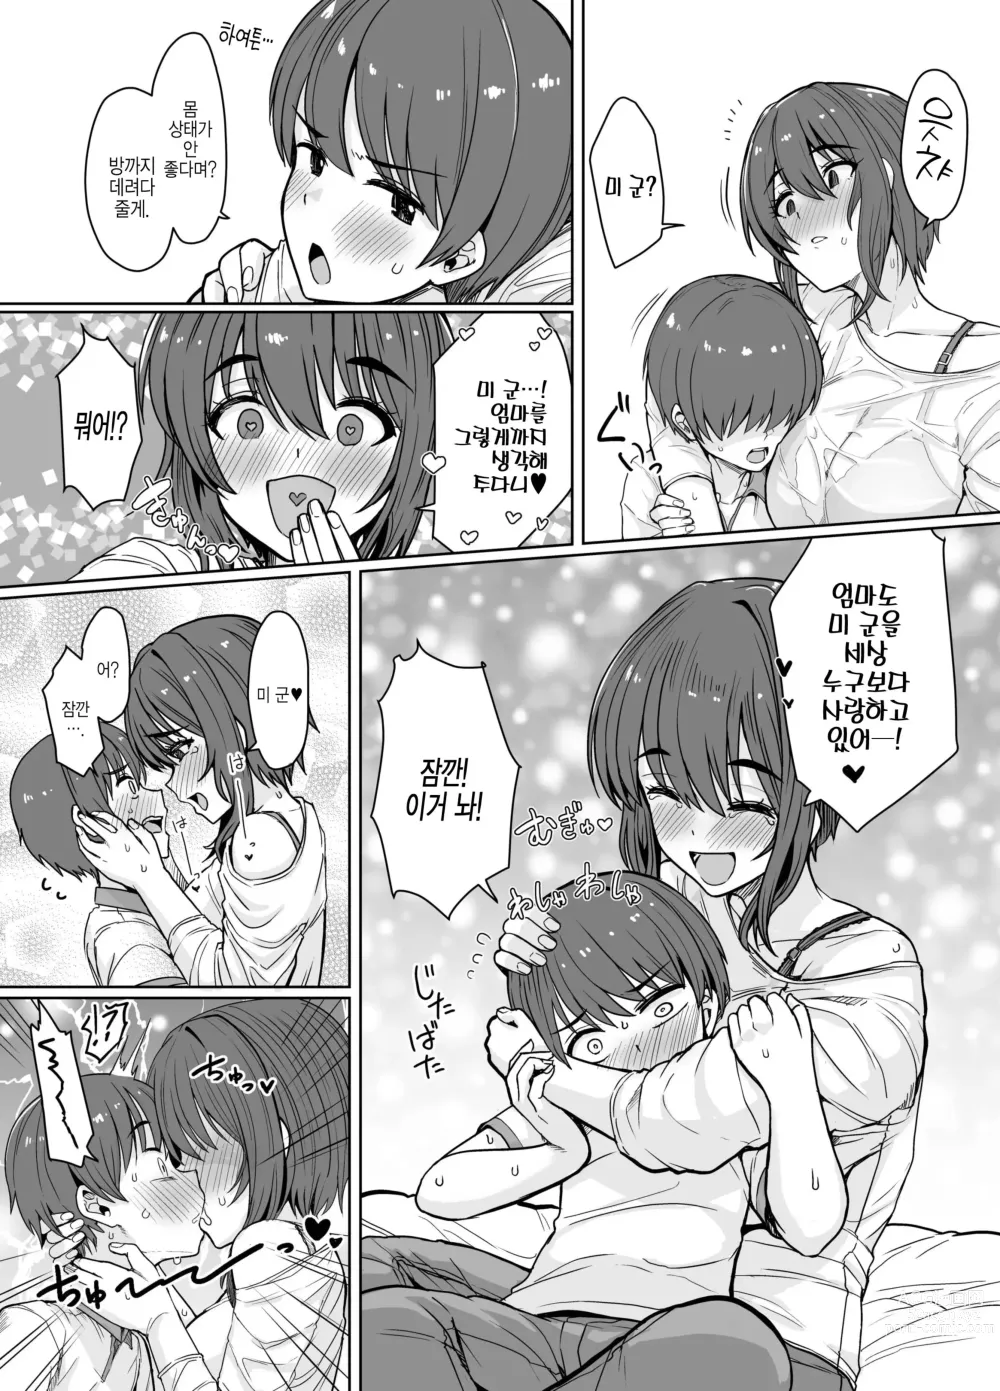 Page 3 of doujinshi 반하는 약으로 암컷이 된 귀여운 거유 엄마에게 덮쳐지고 싶다